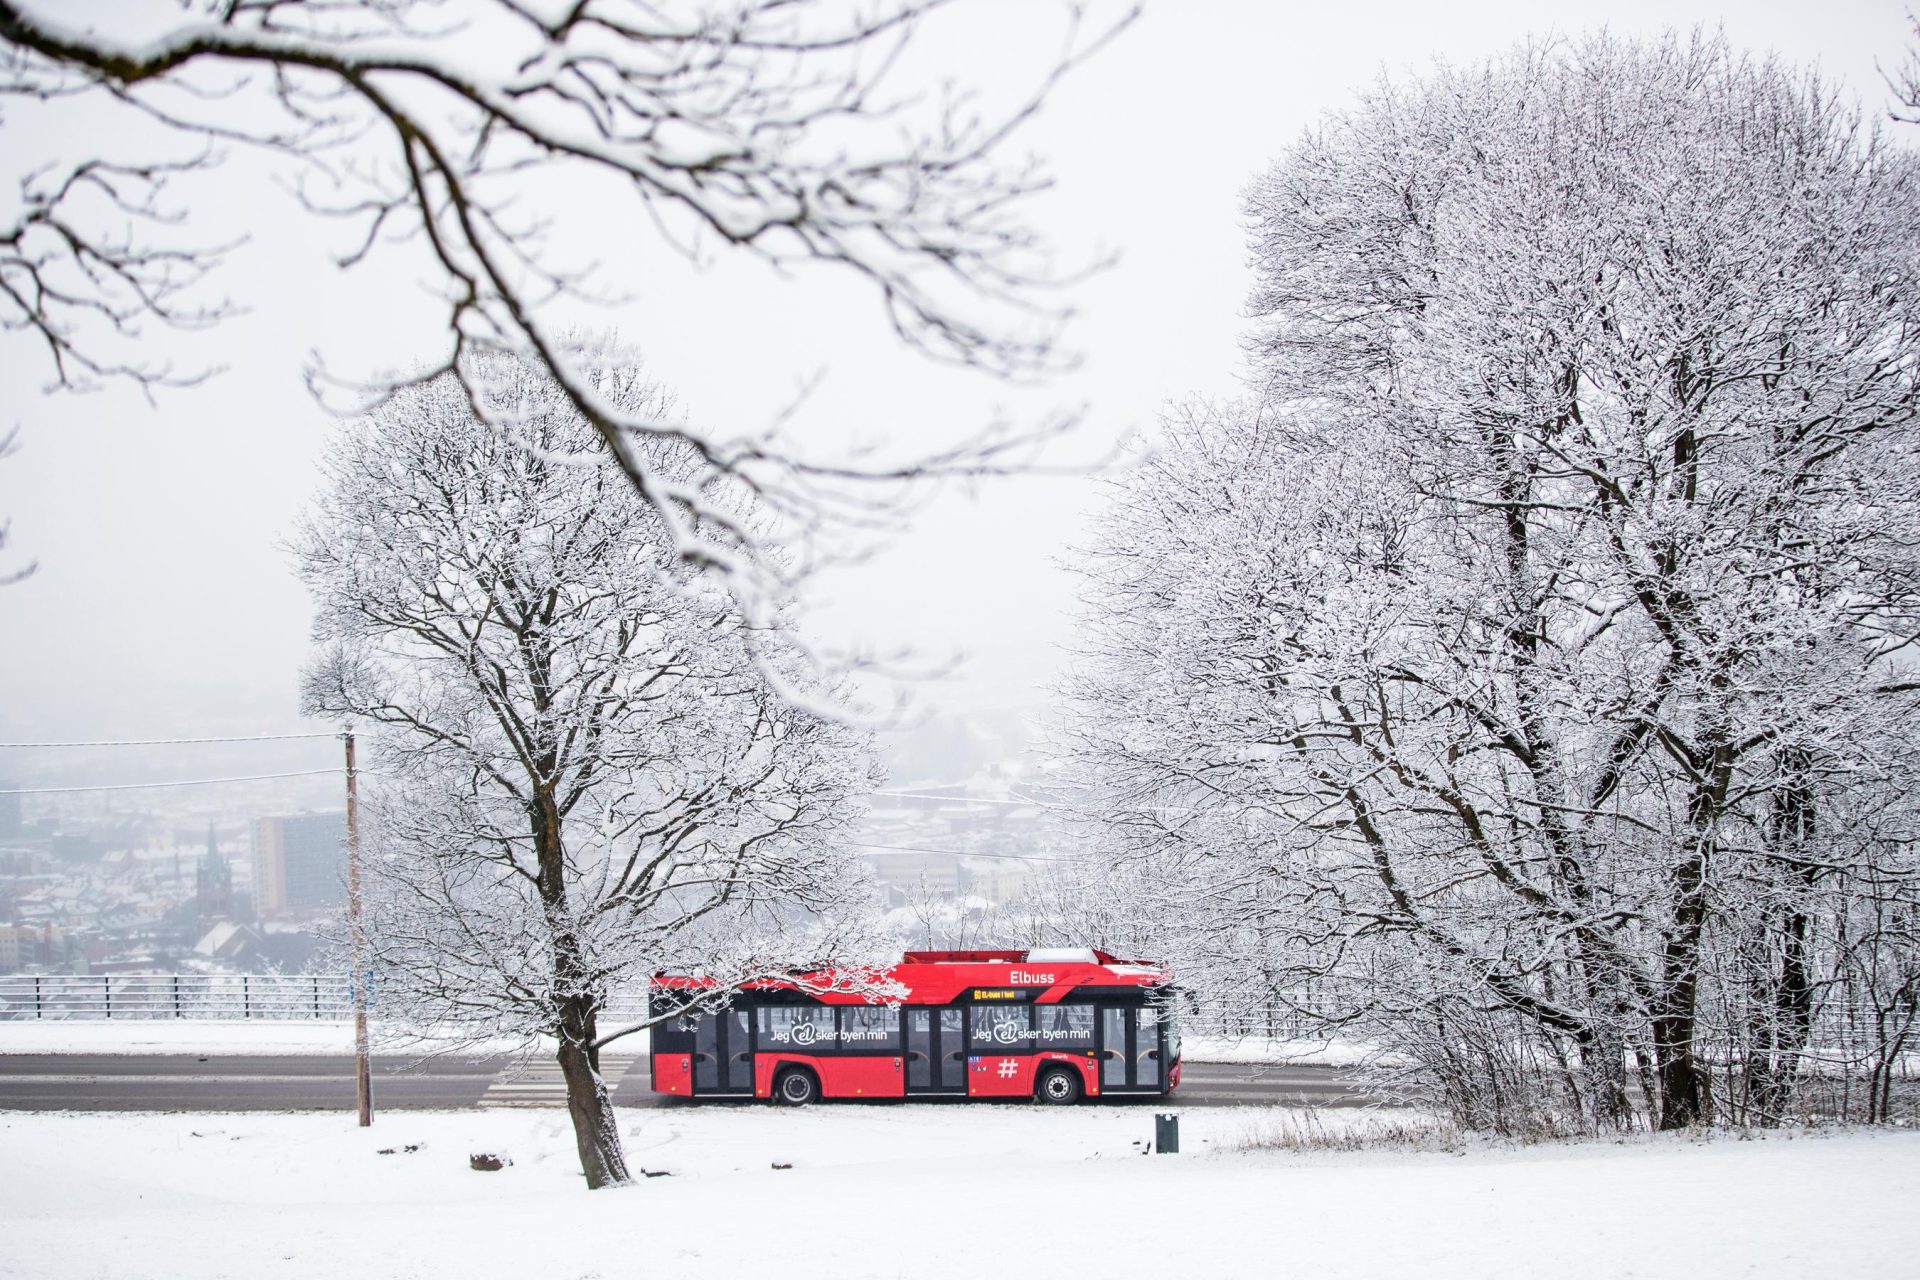 En rød buss kjører langs en vei flankert av snødekte trær med et uskarpt bybilde i bakgrunnen.